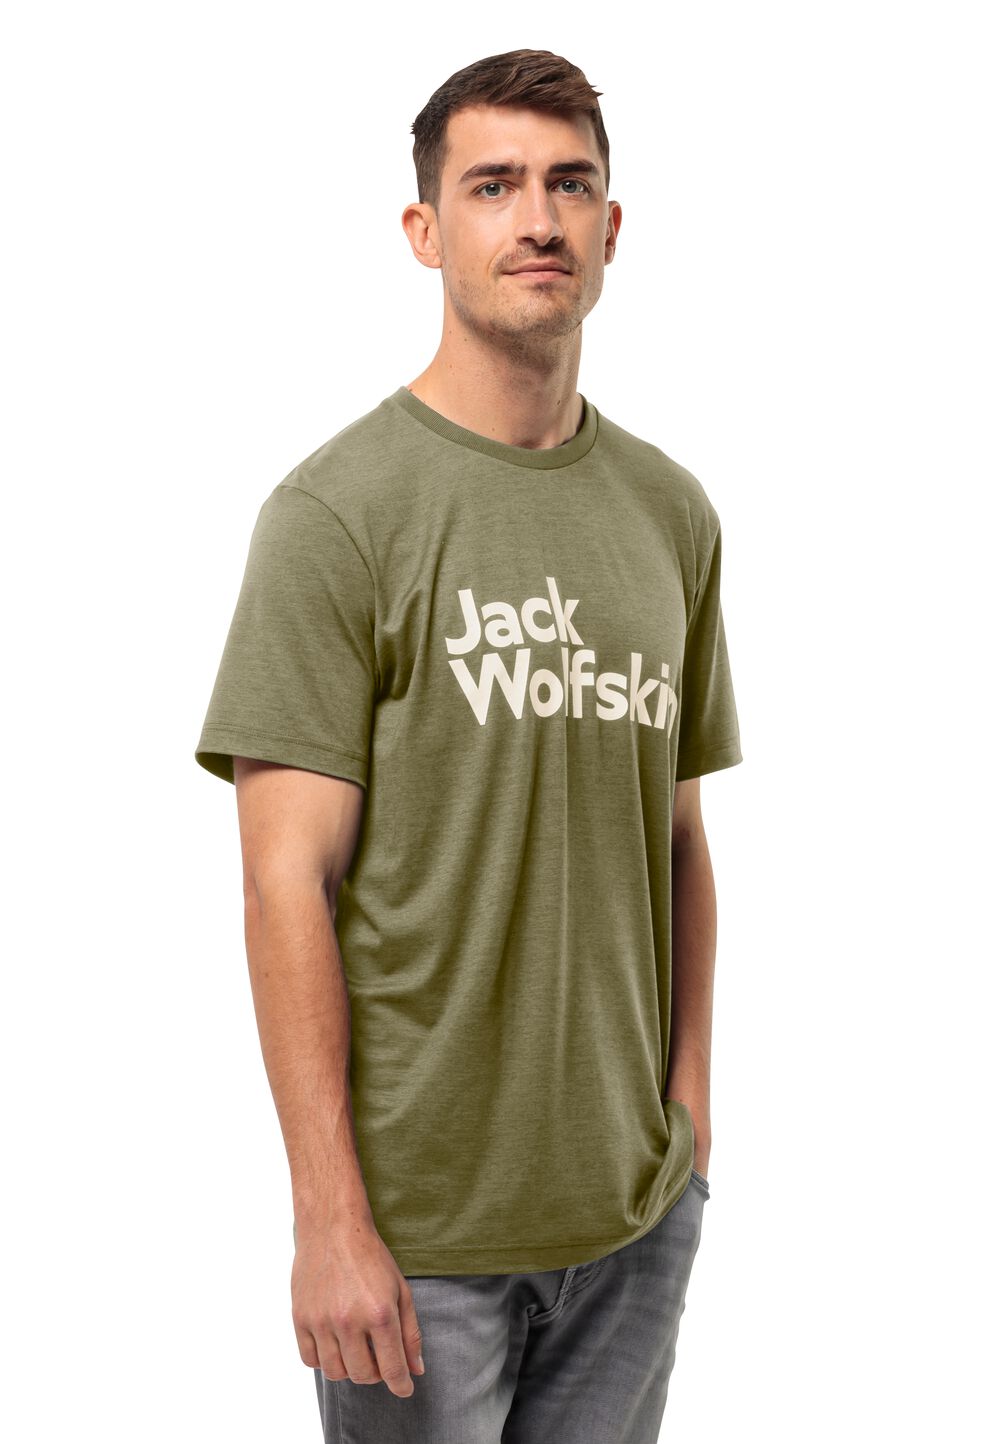 Jack Wolfskin Funktionsshirt Herren Brand T-Shirt Men 3XL braun bay leaf von Jack Wolfskin